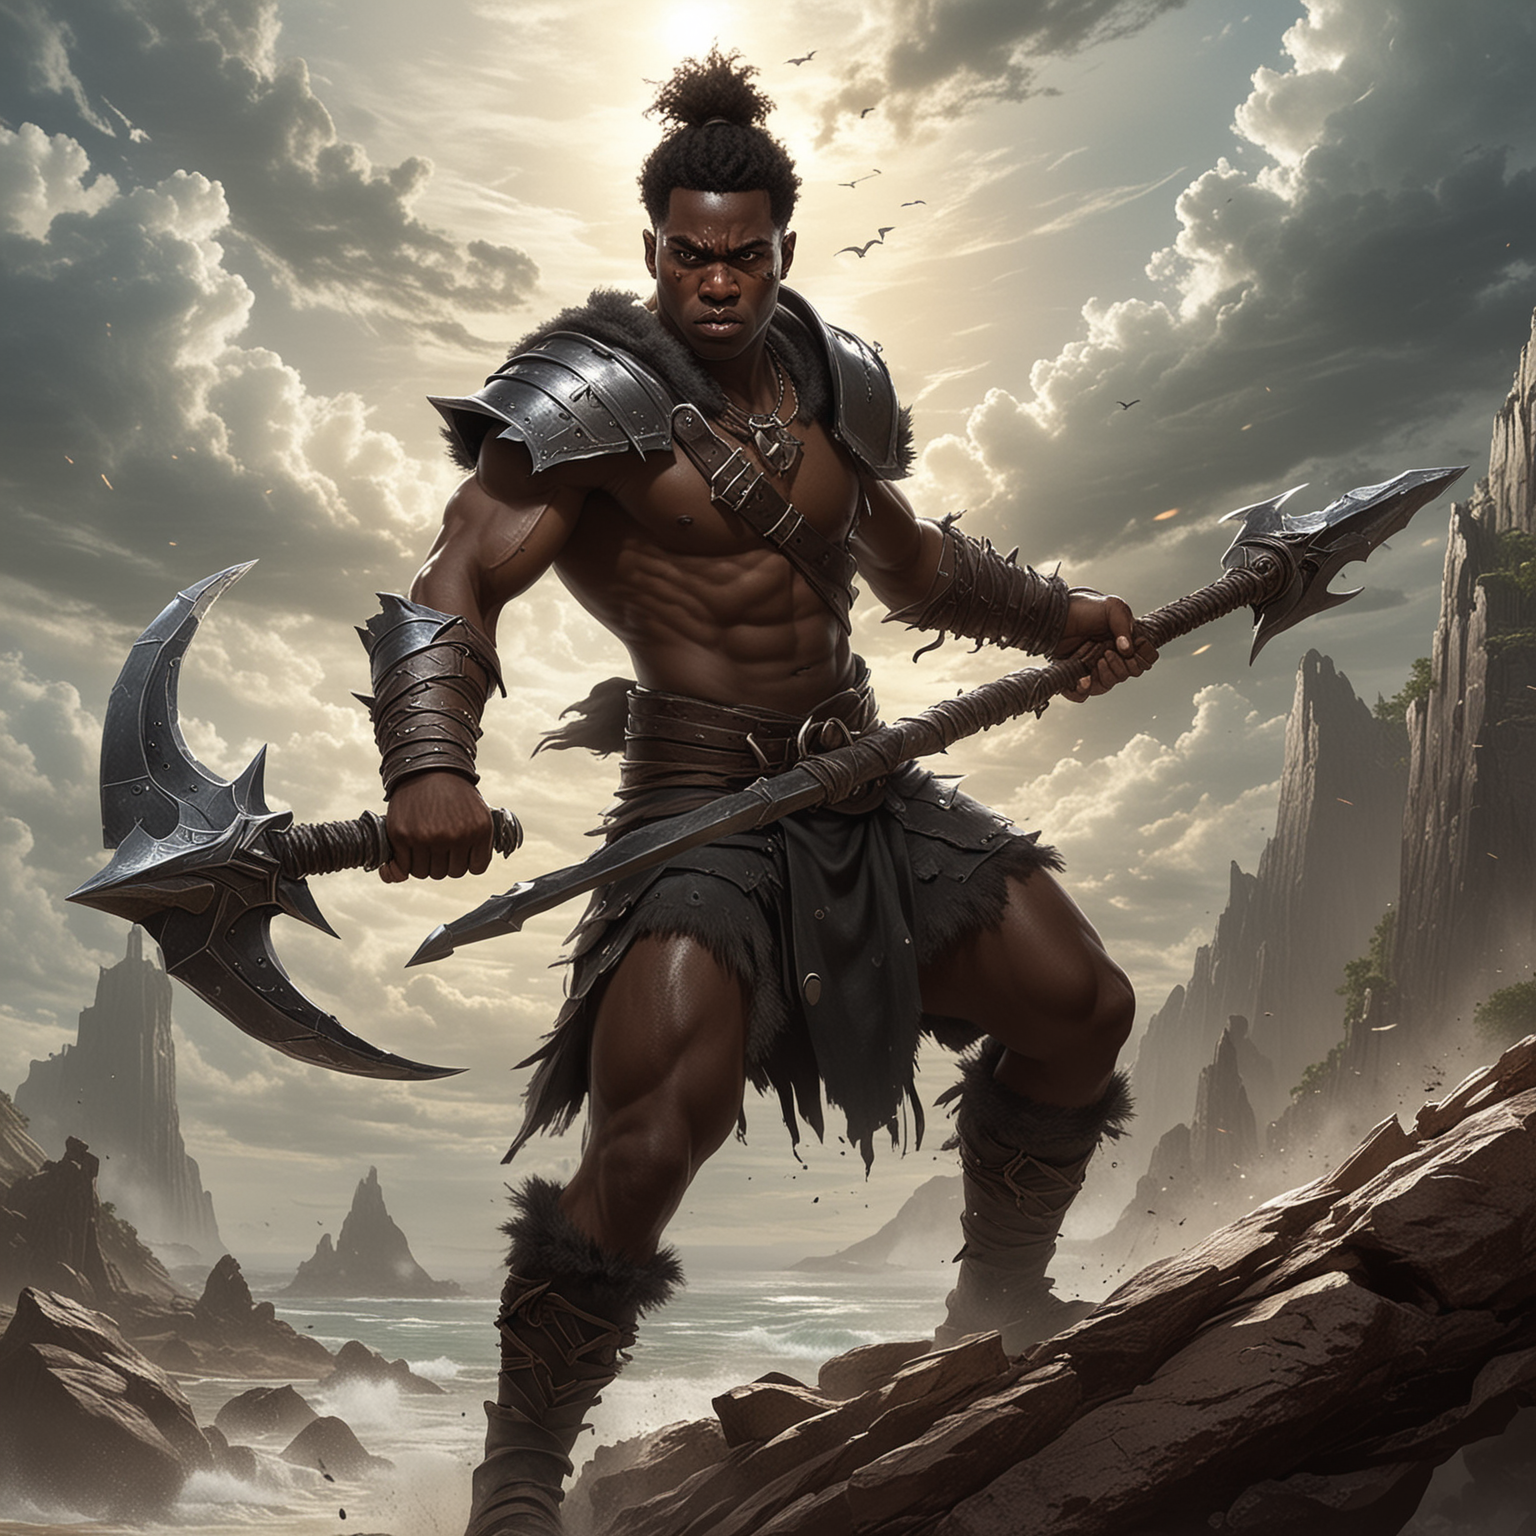 Desenvolva uma imagem de um jovem bárbaro negro empunhando um halberd com confiança enquanto enfrenta um horizonte desafiador, destacando sua força, determinação e destreza em meio à batalha iminente